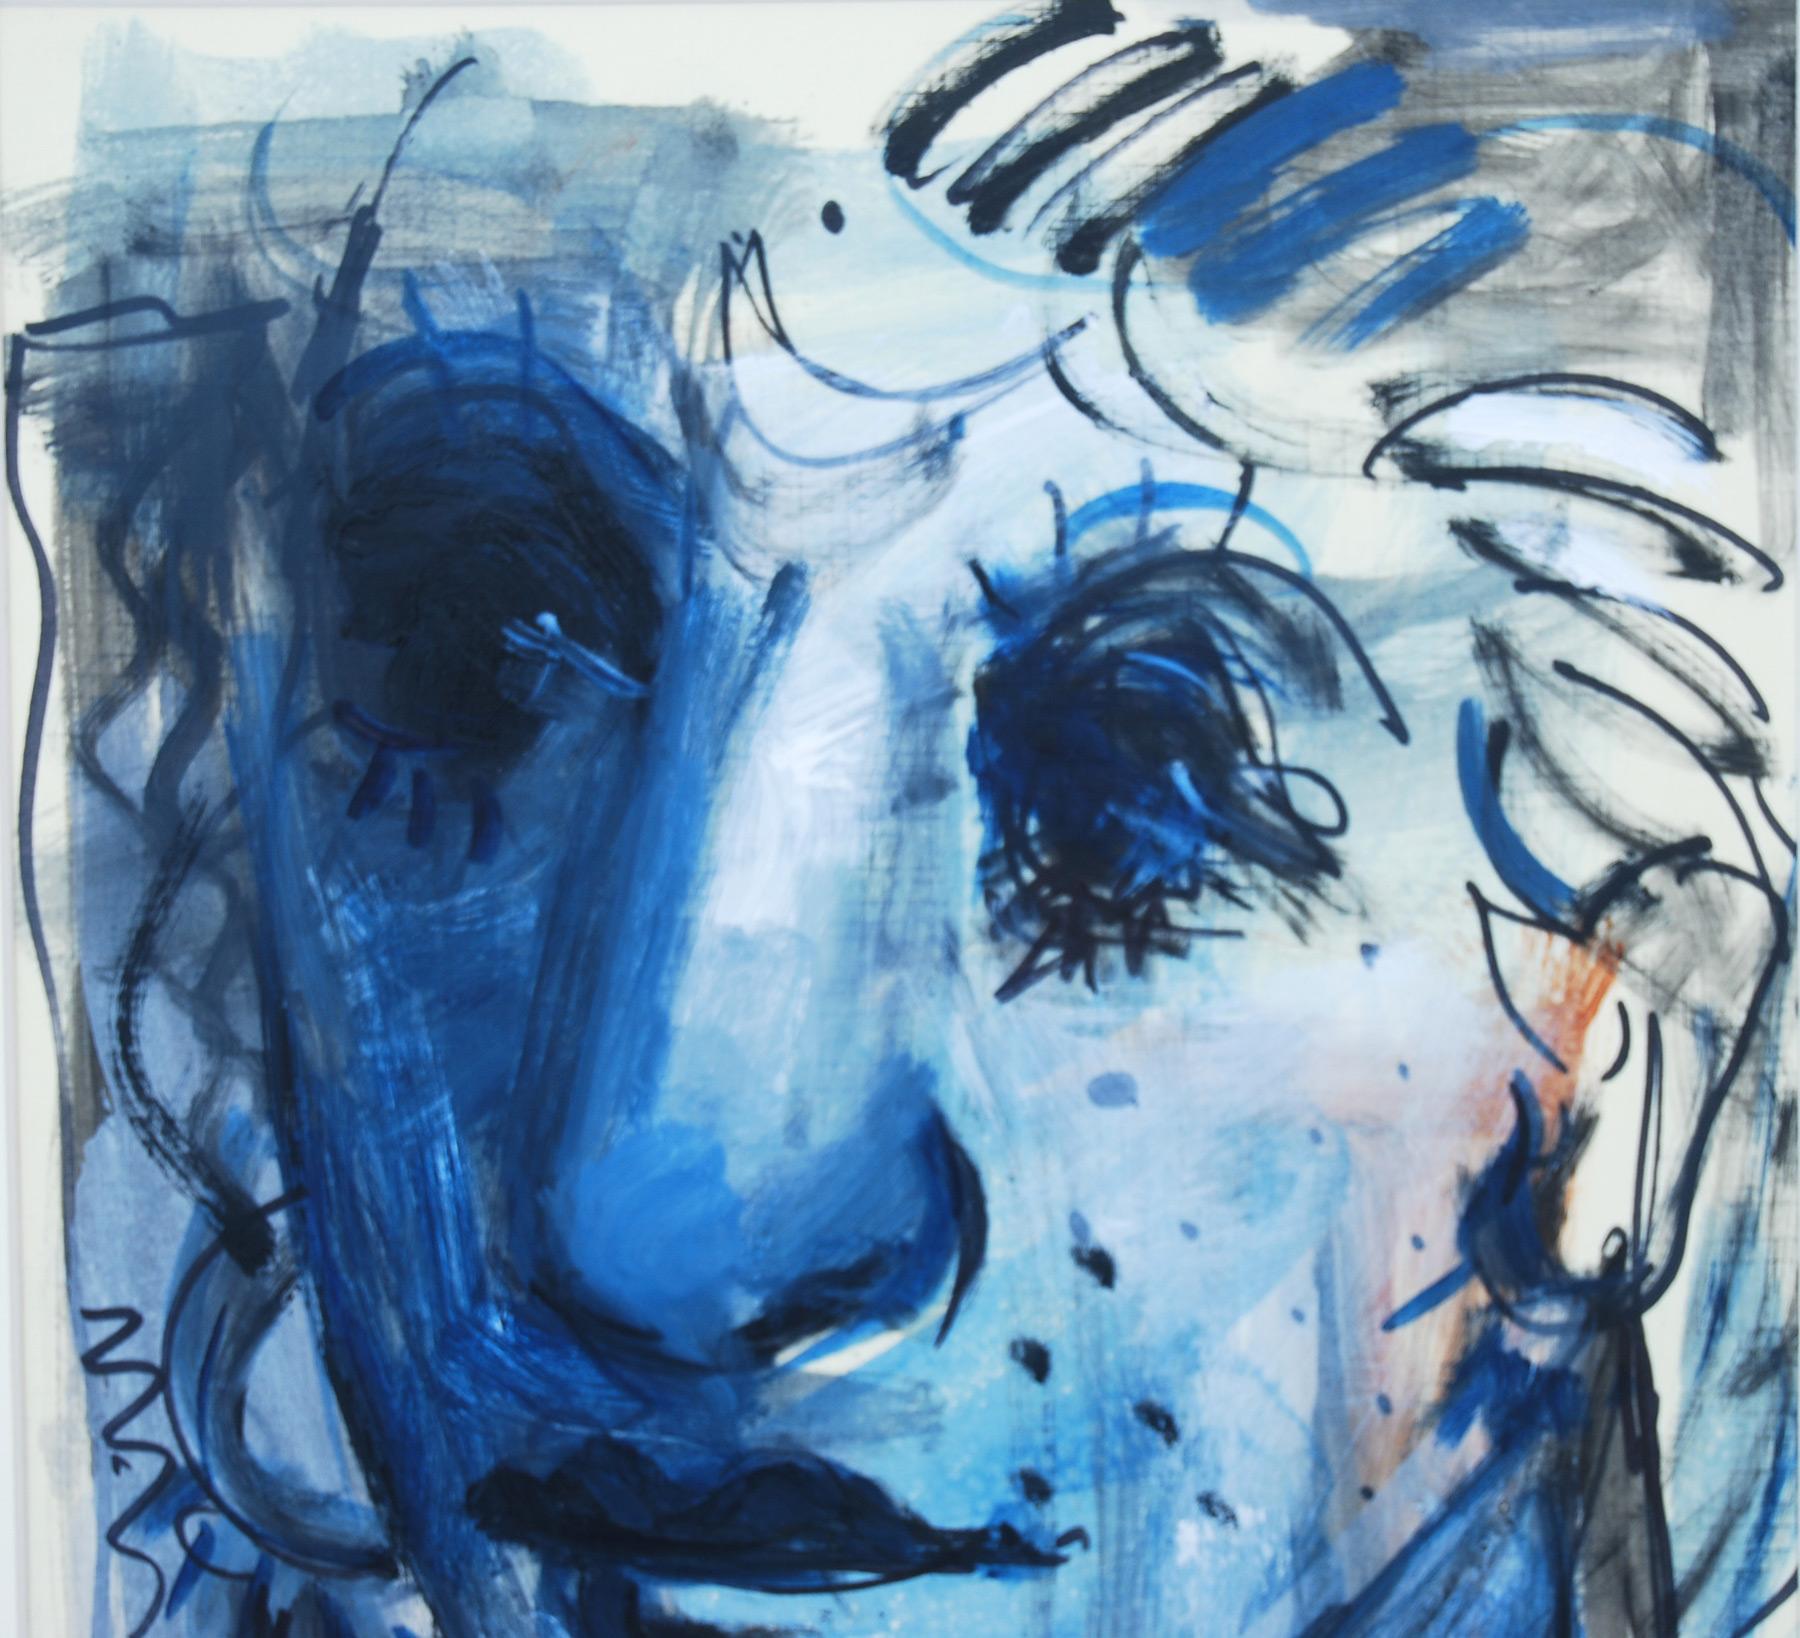 Couple, Faces, Techniques mixtes, Bleu, Noir, Blanc de l'artiste indien « En stock » - Gris Figurative Painting par Sekhar Kar